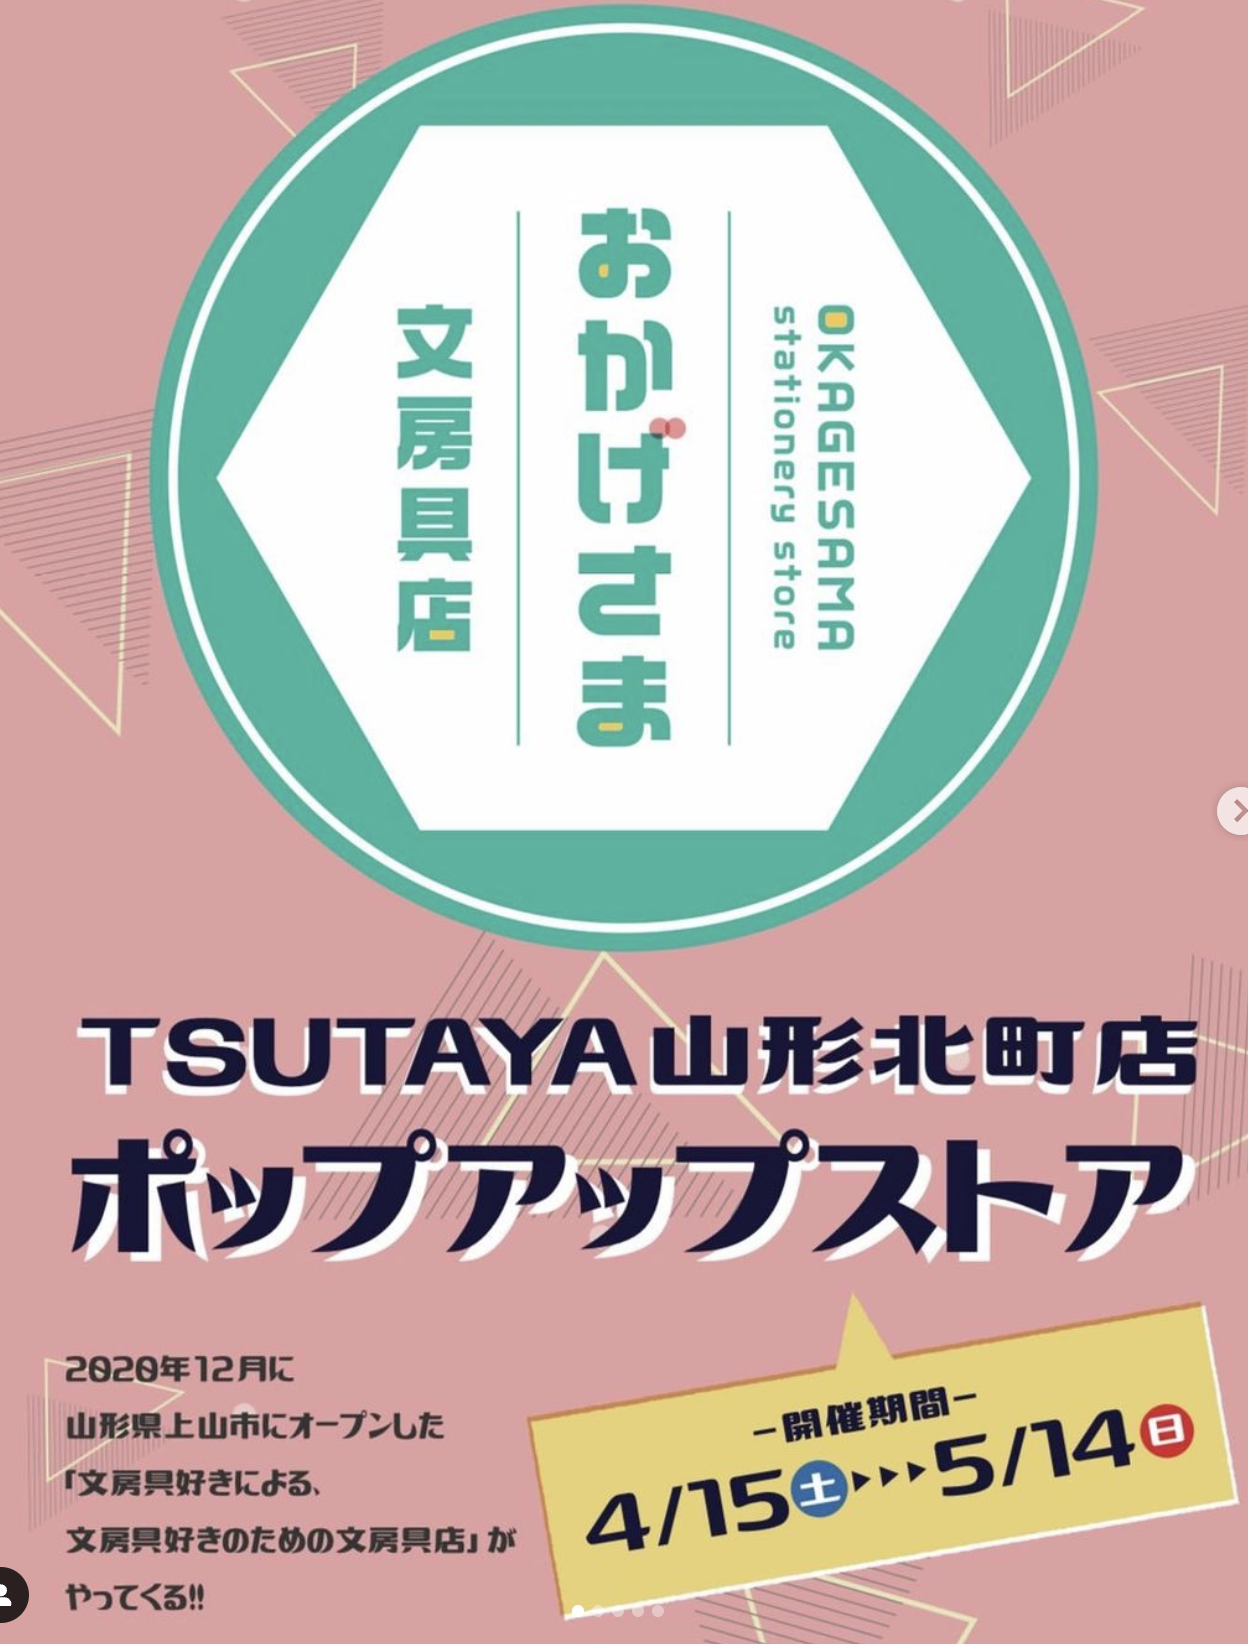 【山形イベント情報〜5/14】TSUTAYA山形北店ポップアップストア